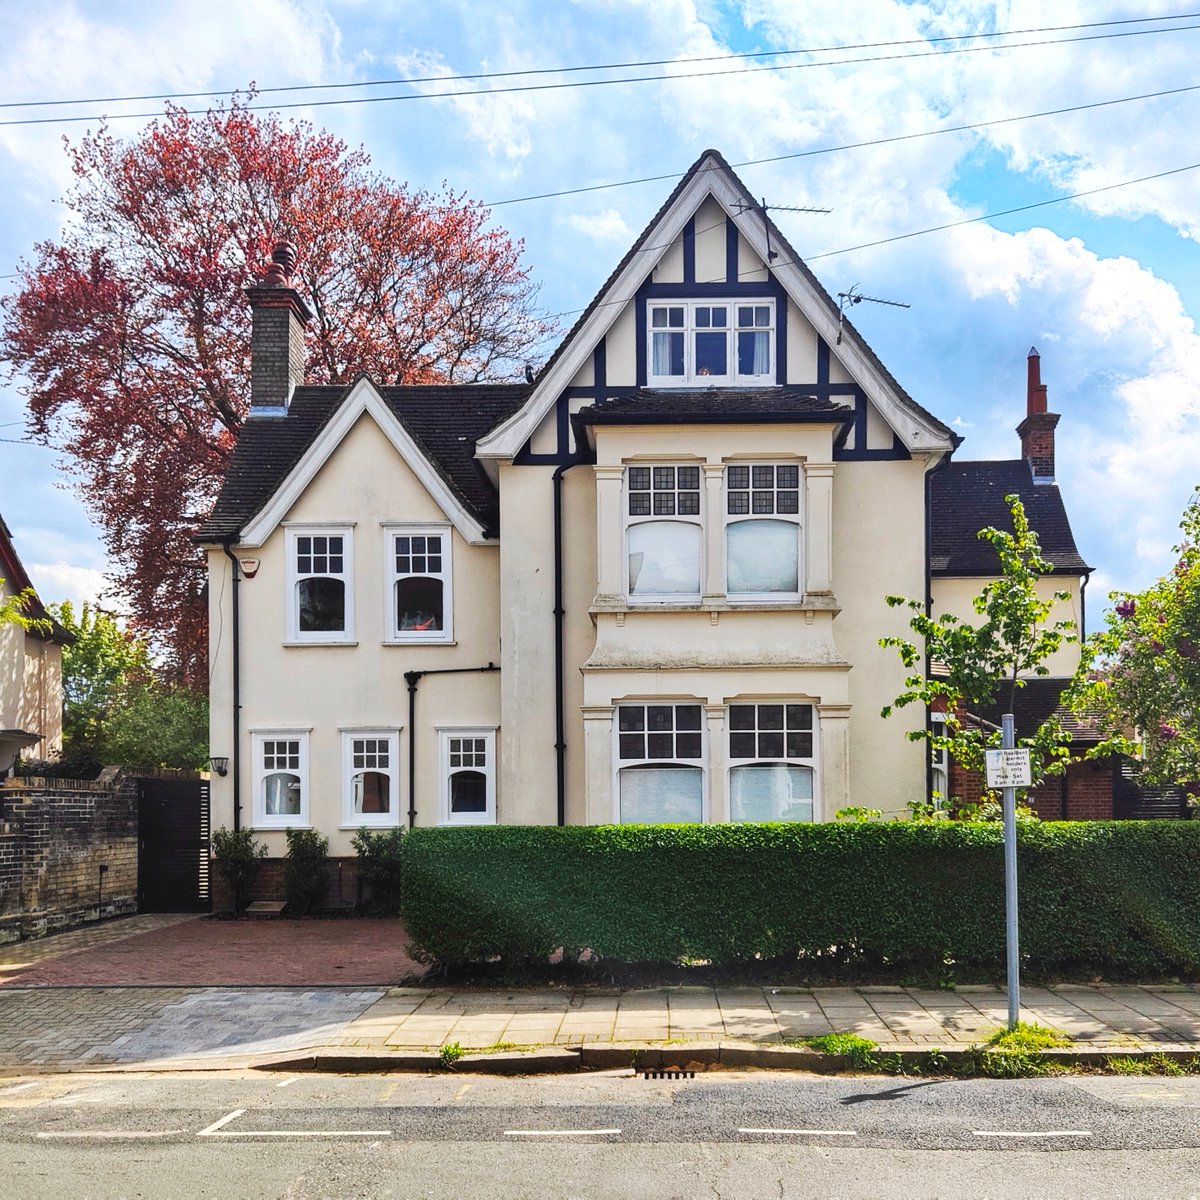 The Houses of Cambridge 
#WindowsOnWednesday